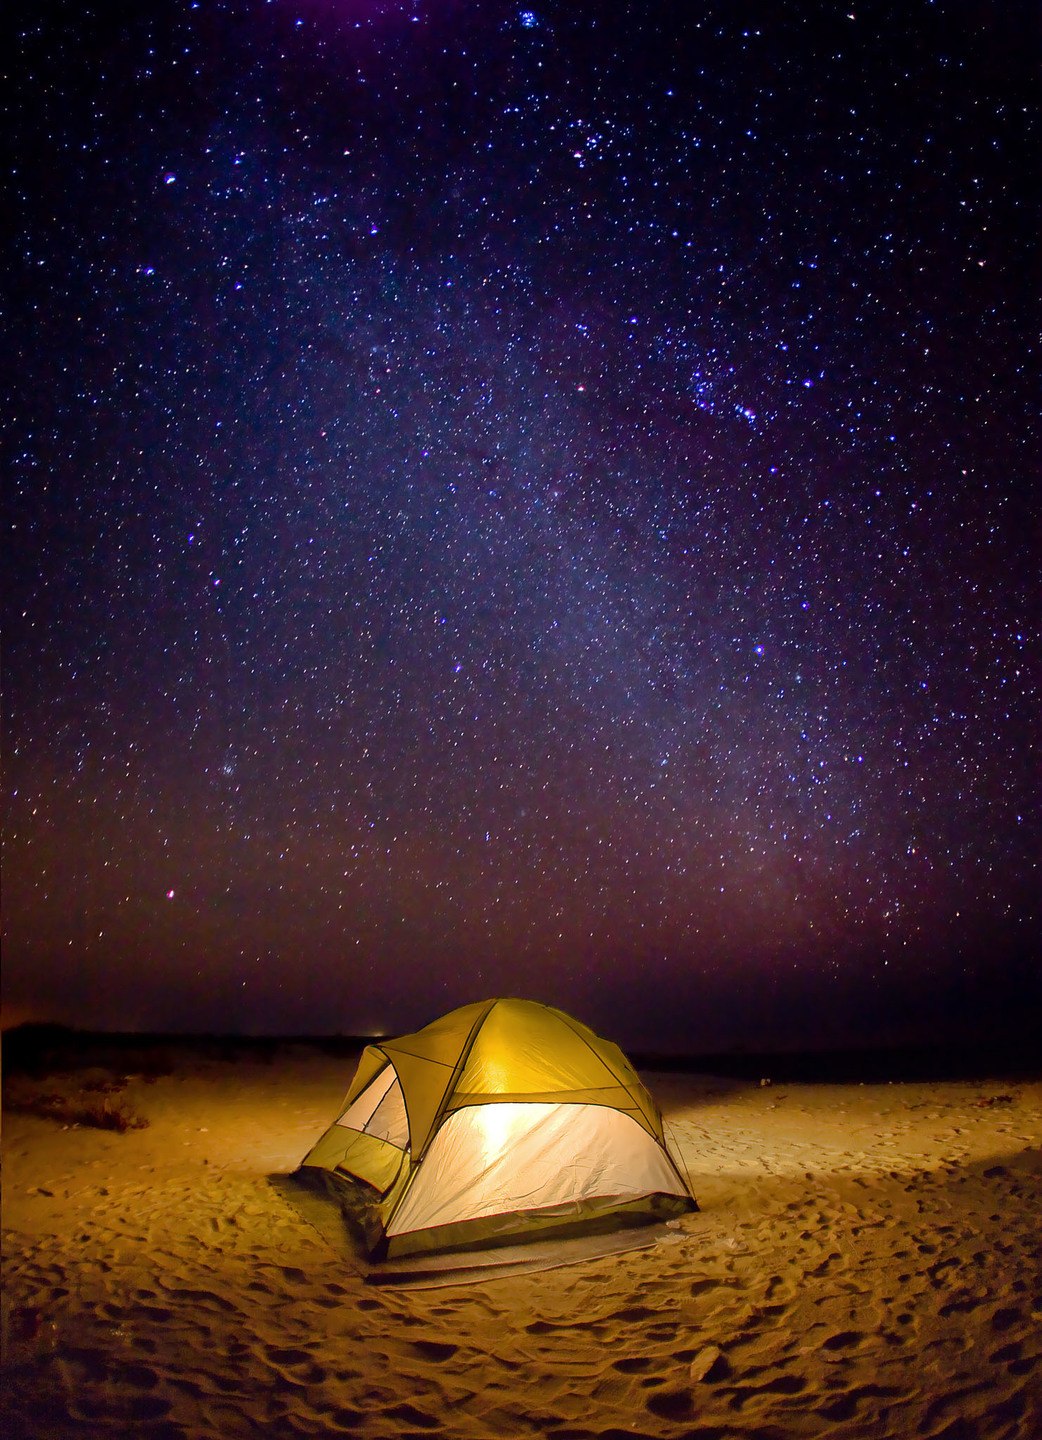 Eine Übernachtung in der Wüste eignet sich perfekt zur Sternenbeobachtung © Ministry of Heritage & Tourism Sultanate of Oman